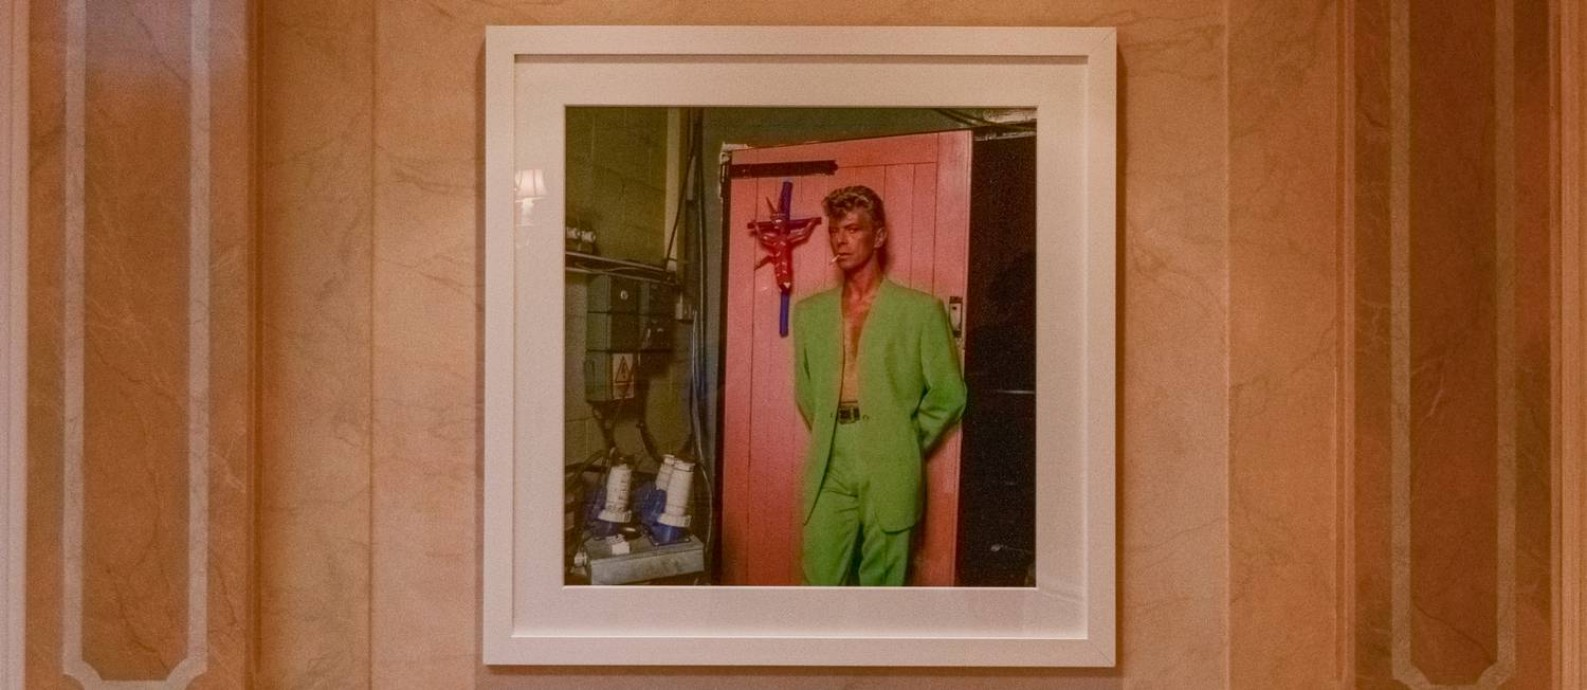 Foto de Bowie foi colocada na parede do foyer do apartamento Foto: Divulgação/Boris Rio / O GLOBO